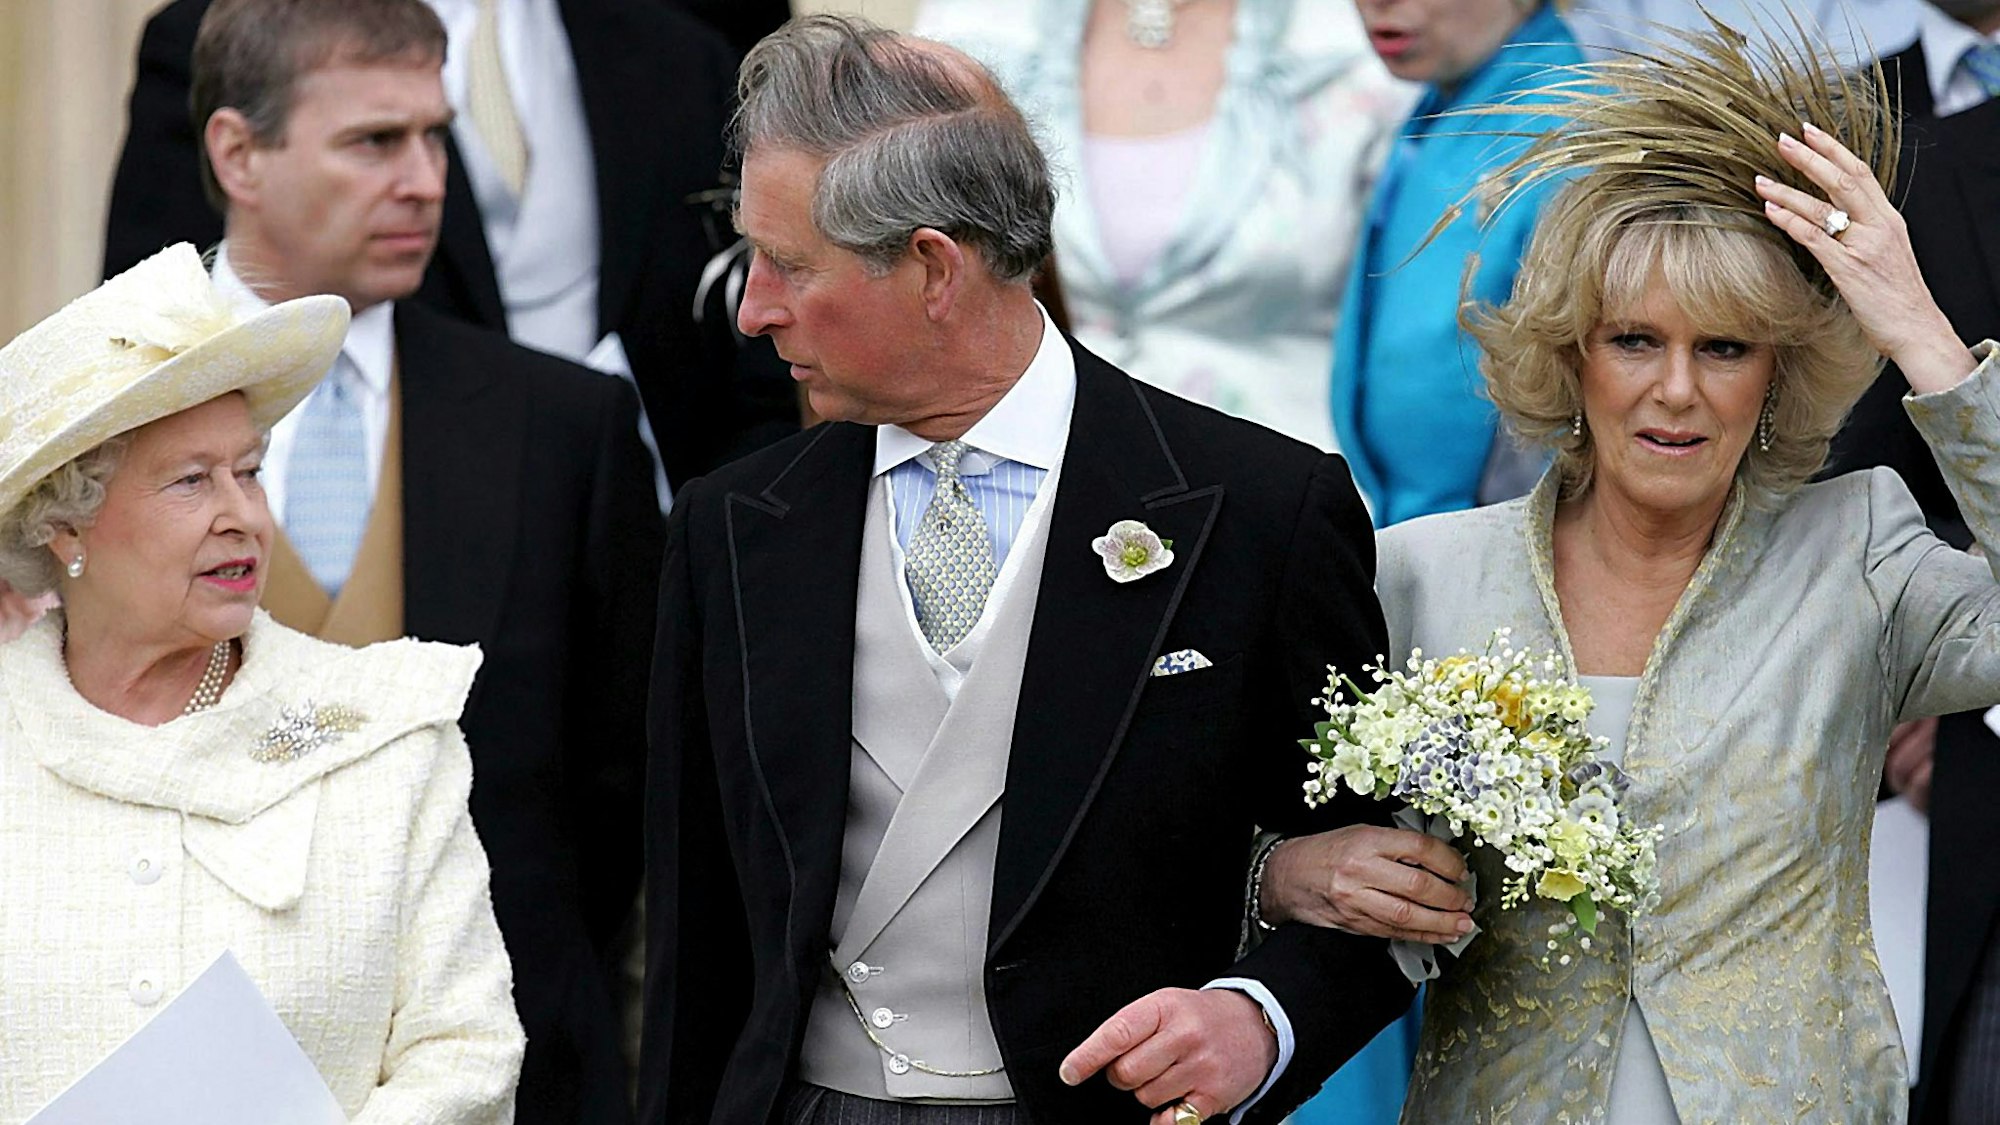 Königin Elizabeth II., der damalige Prinz Charles und Camilla bei der Hochzeit 2005.